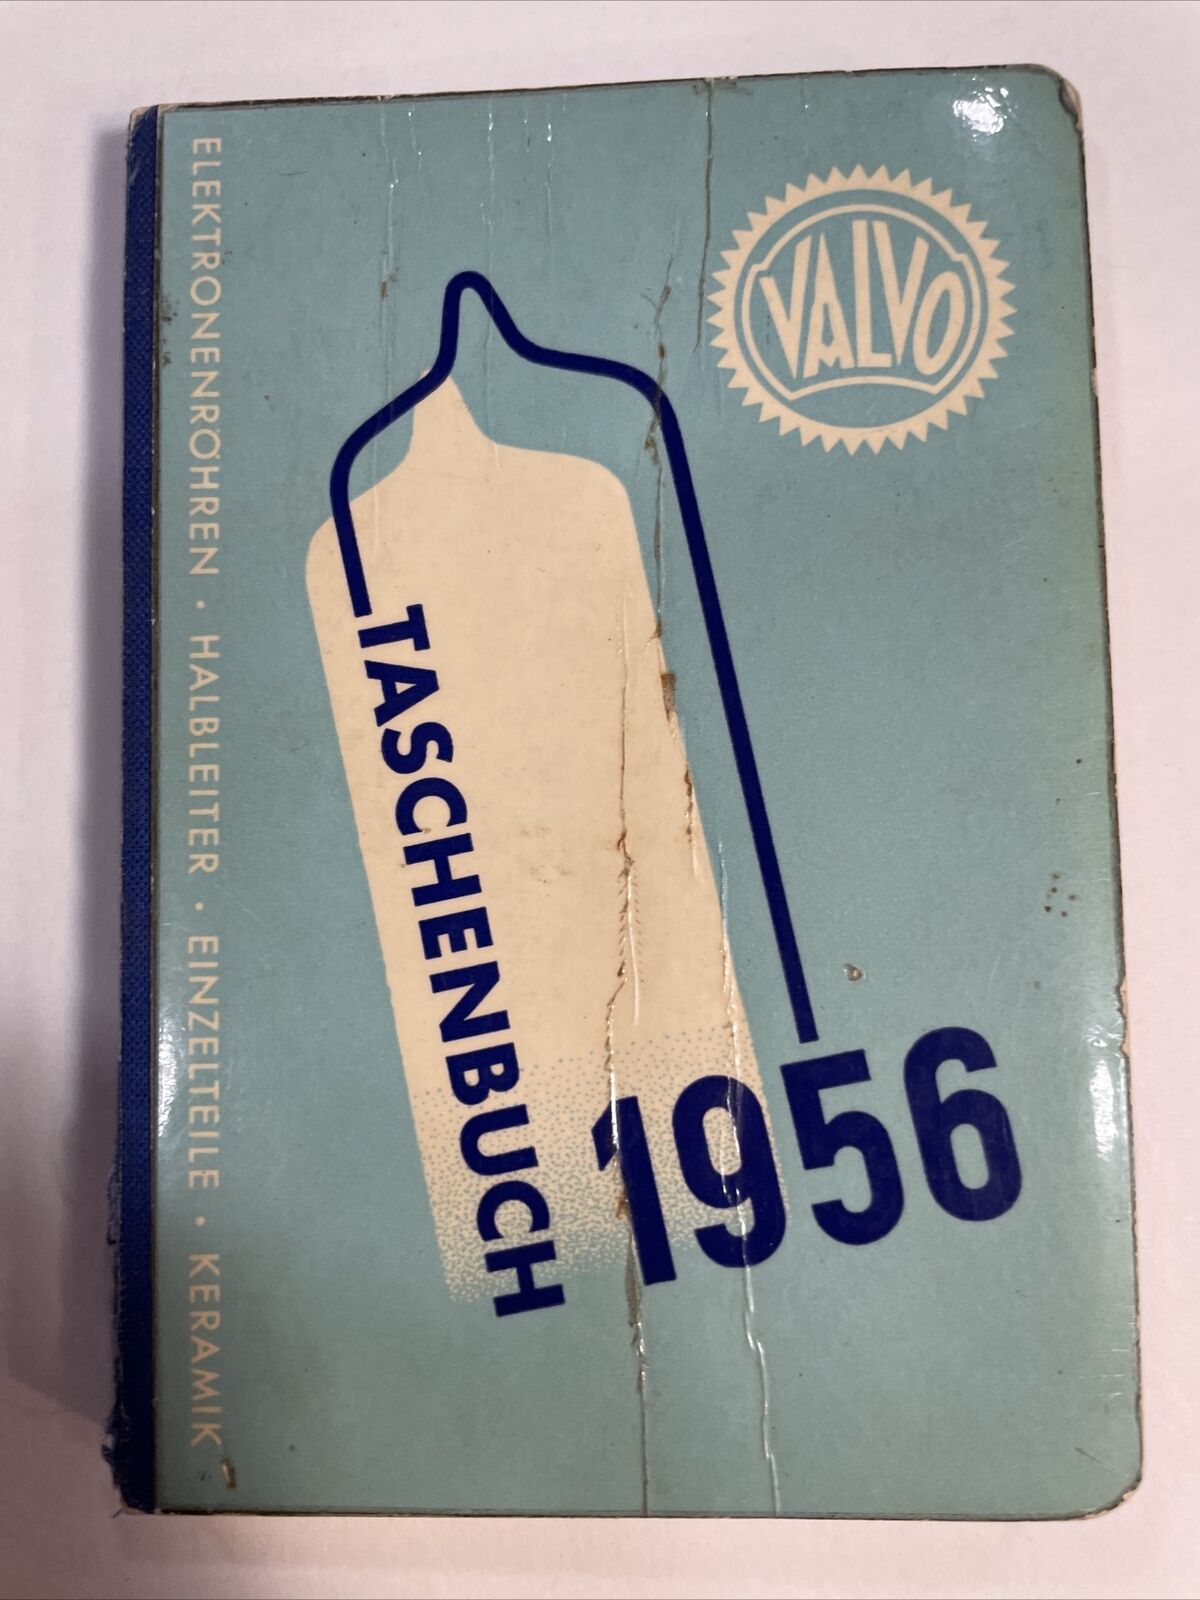 Valvo Vintage 1956 German Radio Pocket Service Manual Taschenbuch